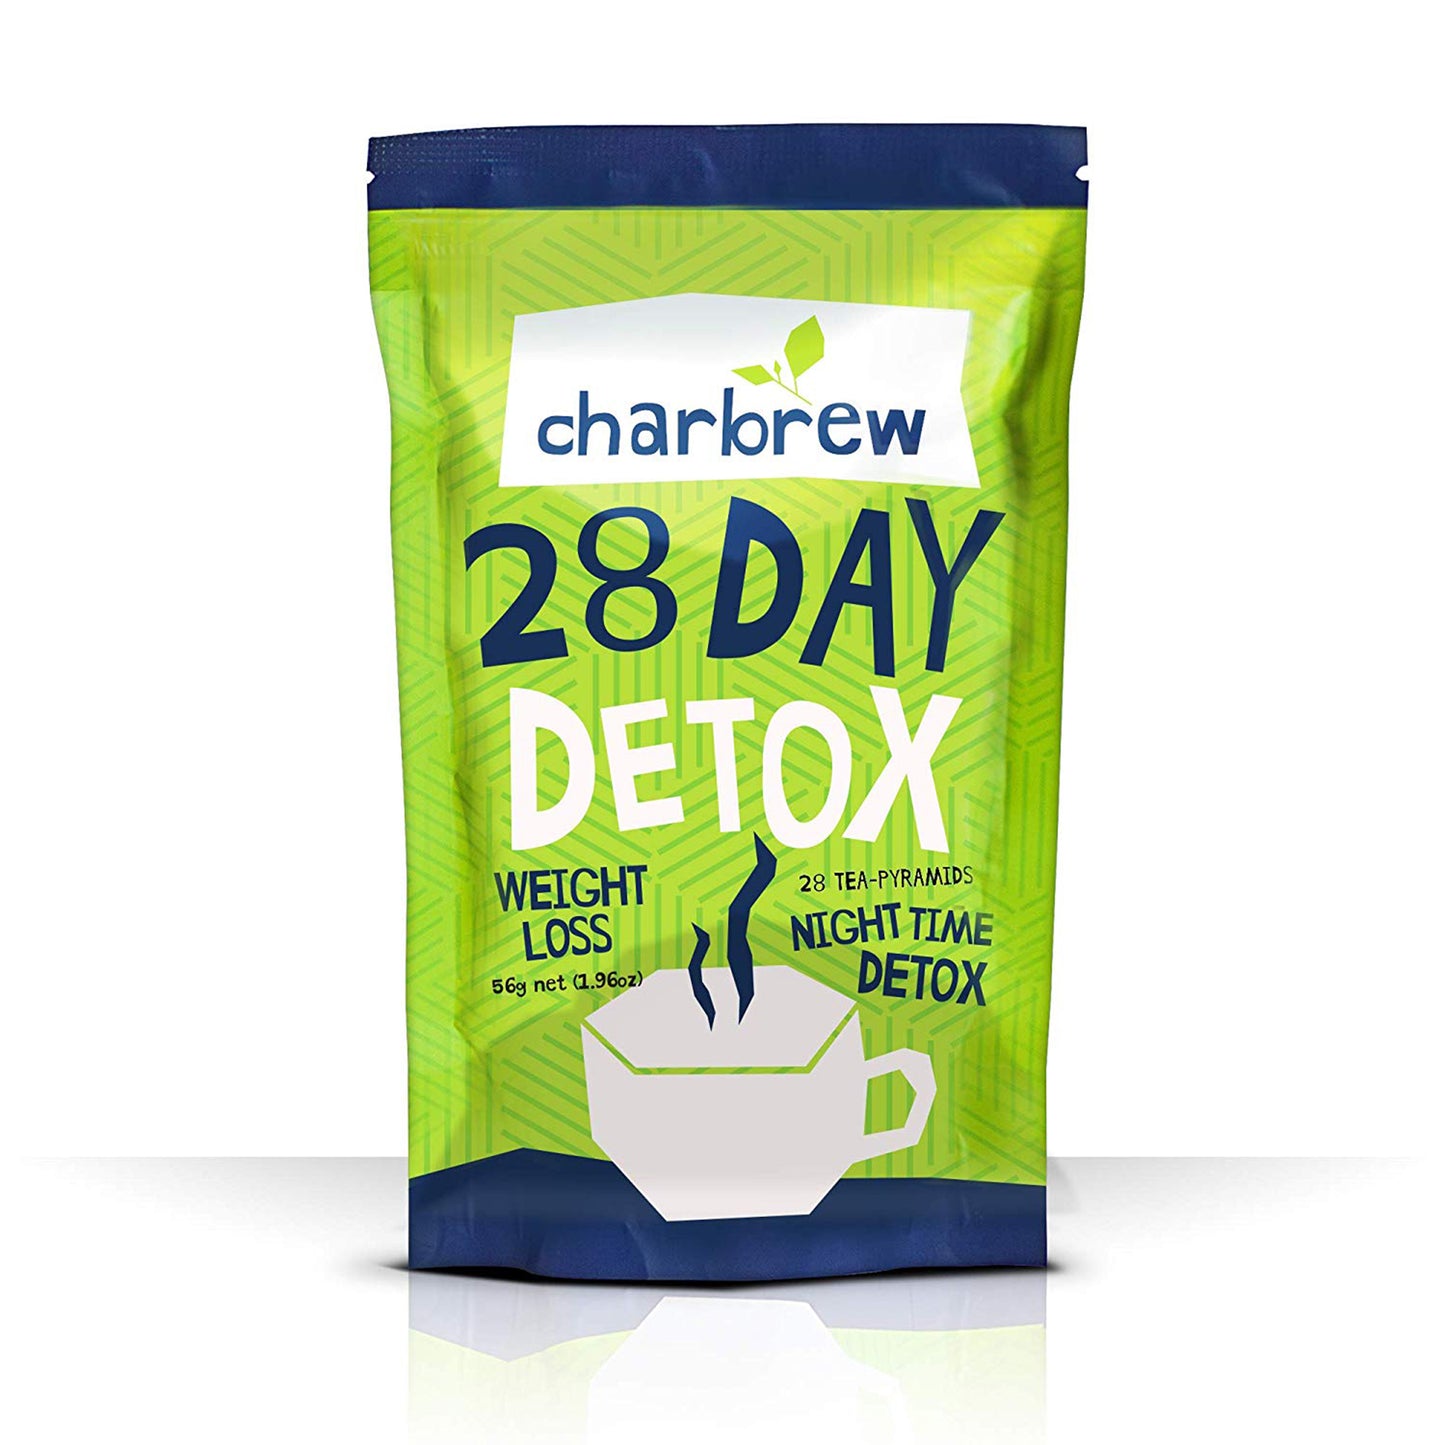 28 Night Time Detox Tea